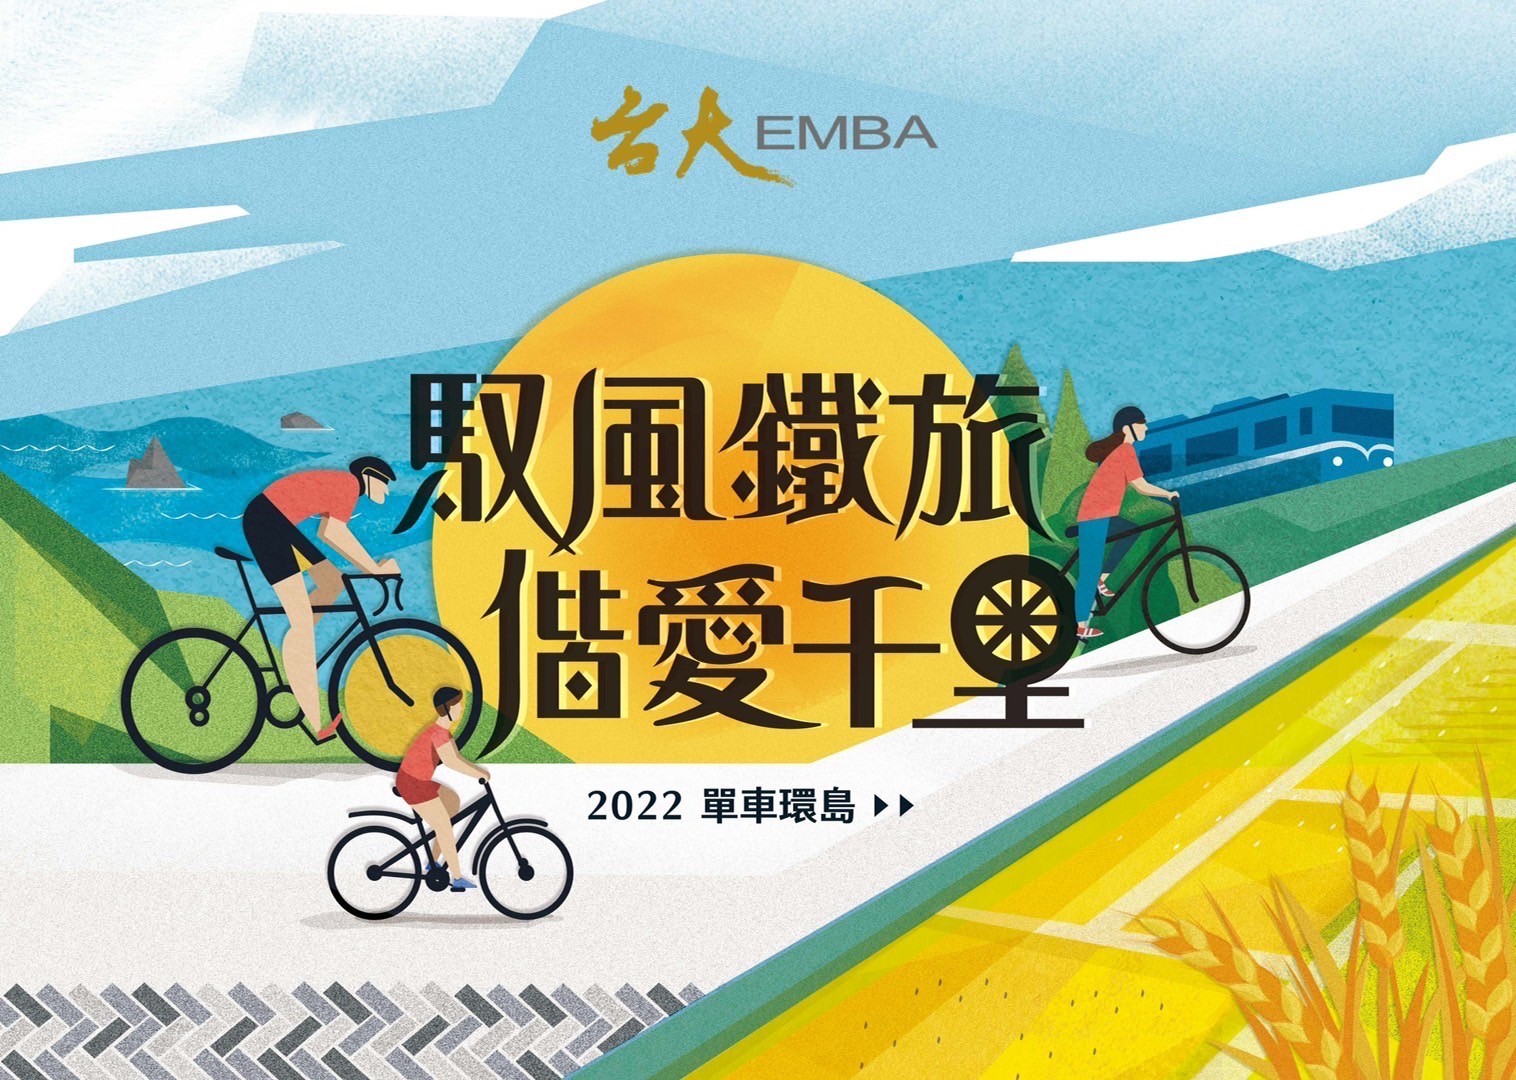 台大EMBA 2022單車環島